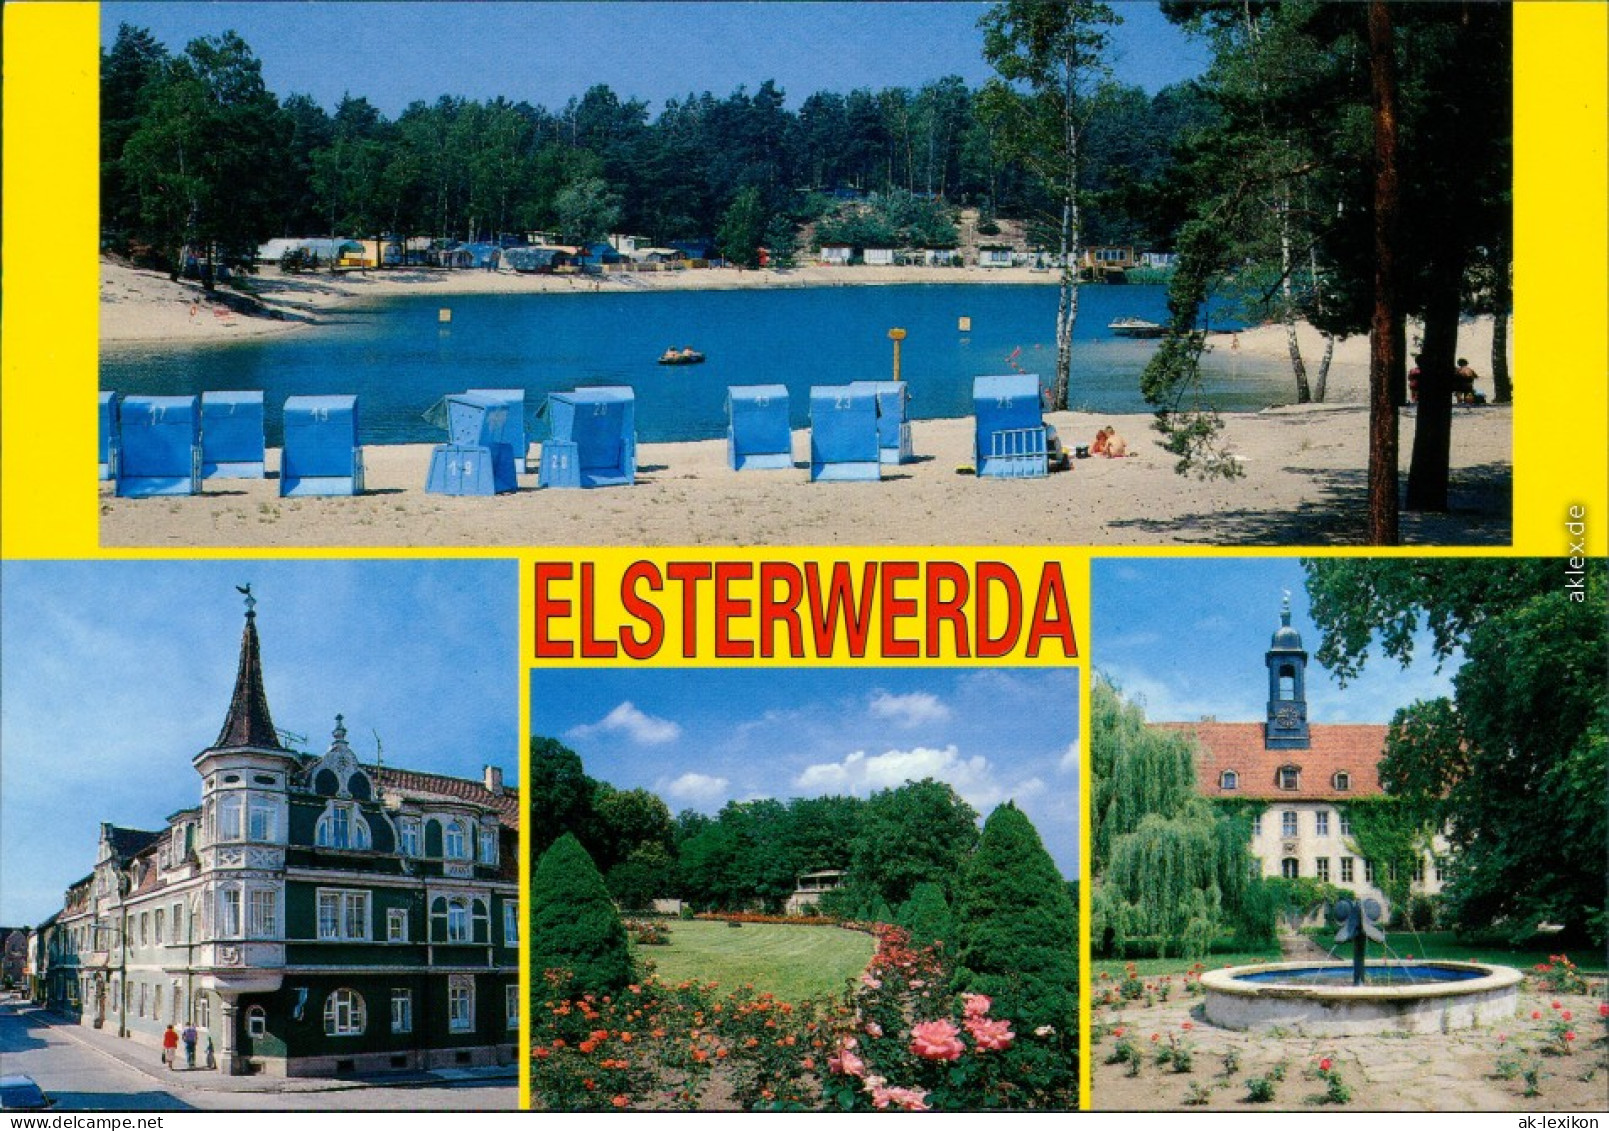 Elsterwerda  Waldbad Zeischa, Rathaus, Rosengarten In Saathain, Schloss 2002 - Elsterwerda